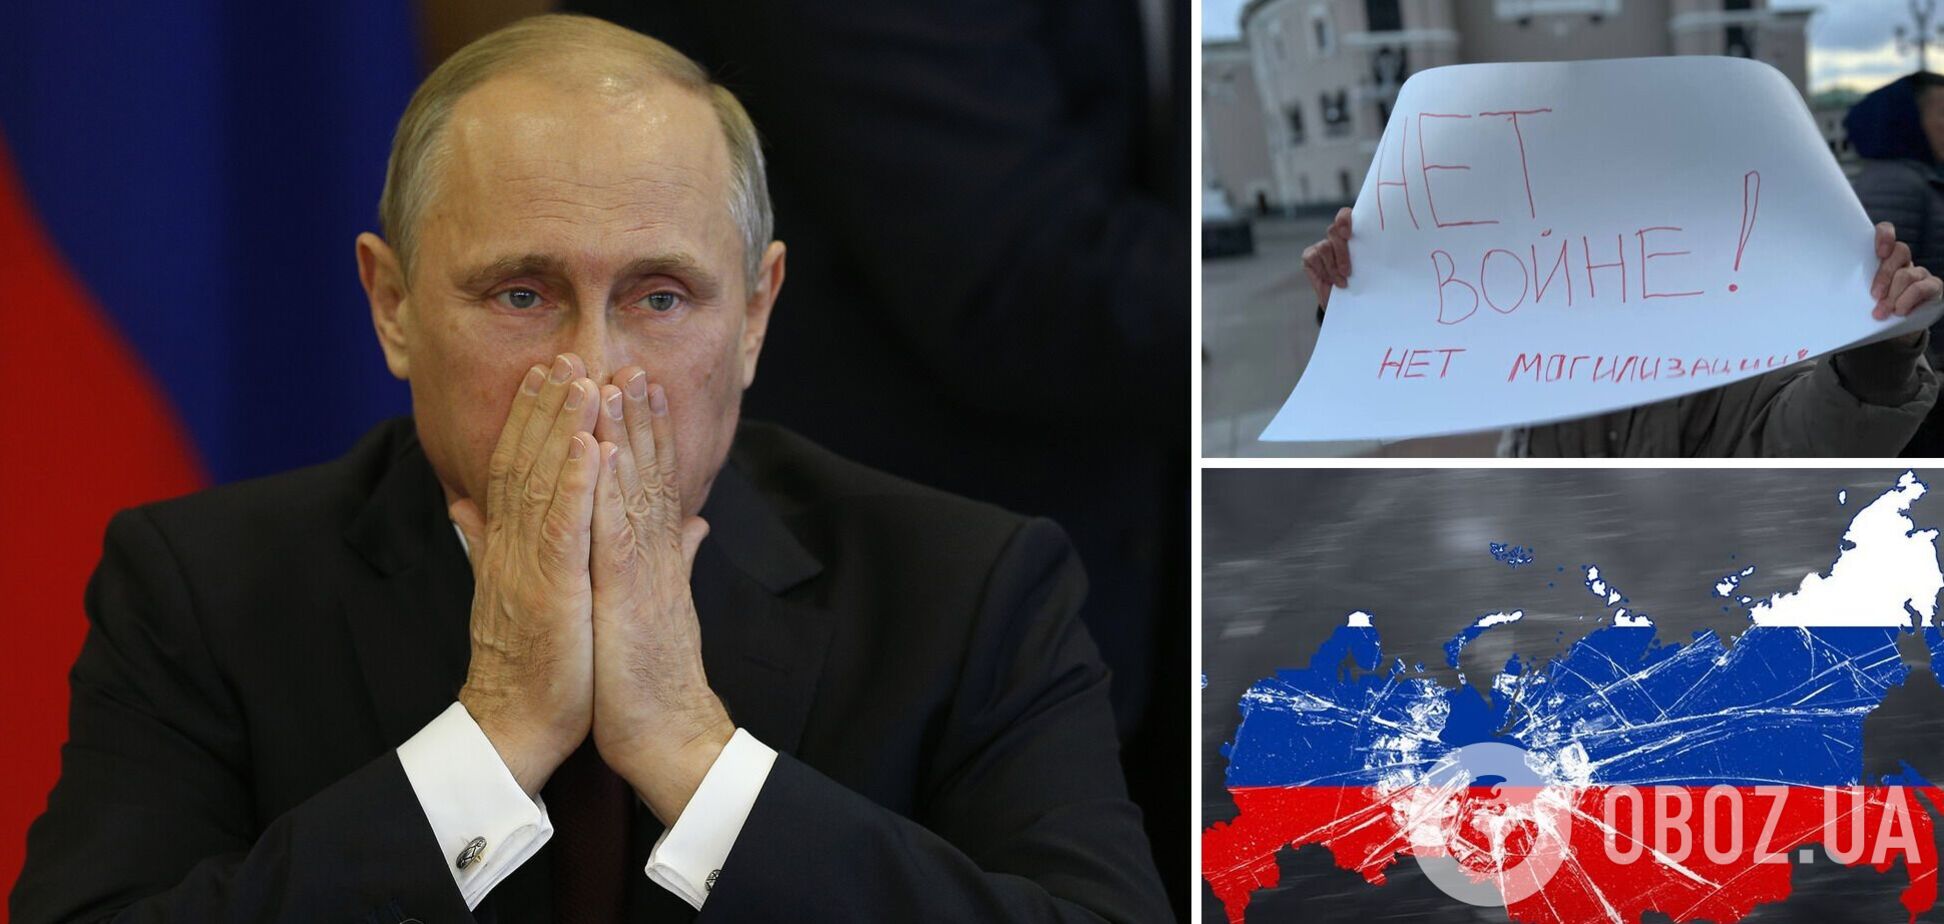 Путін вперше заговорив про повний розвал Росії: будуть московити, уральці та інші. Відео